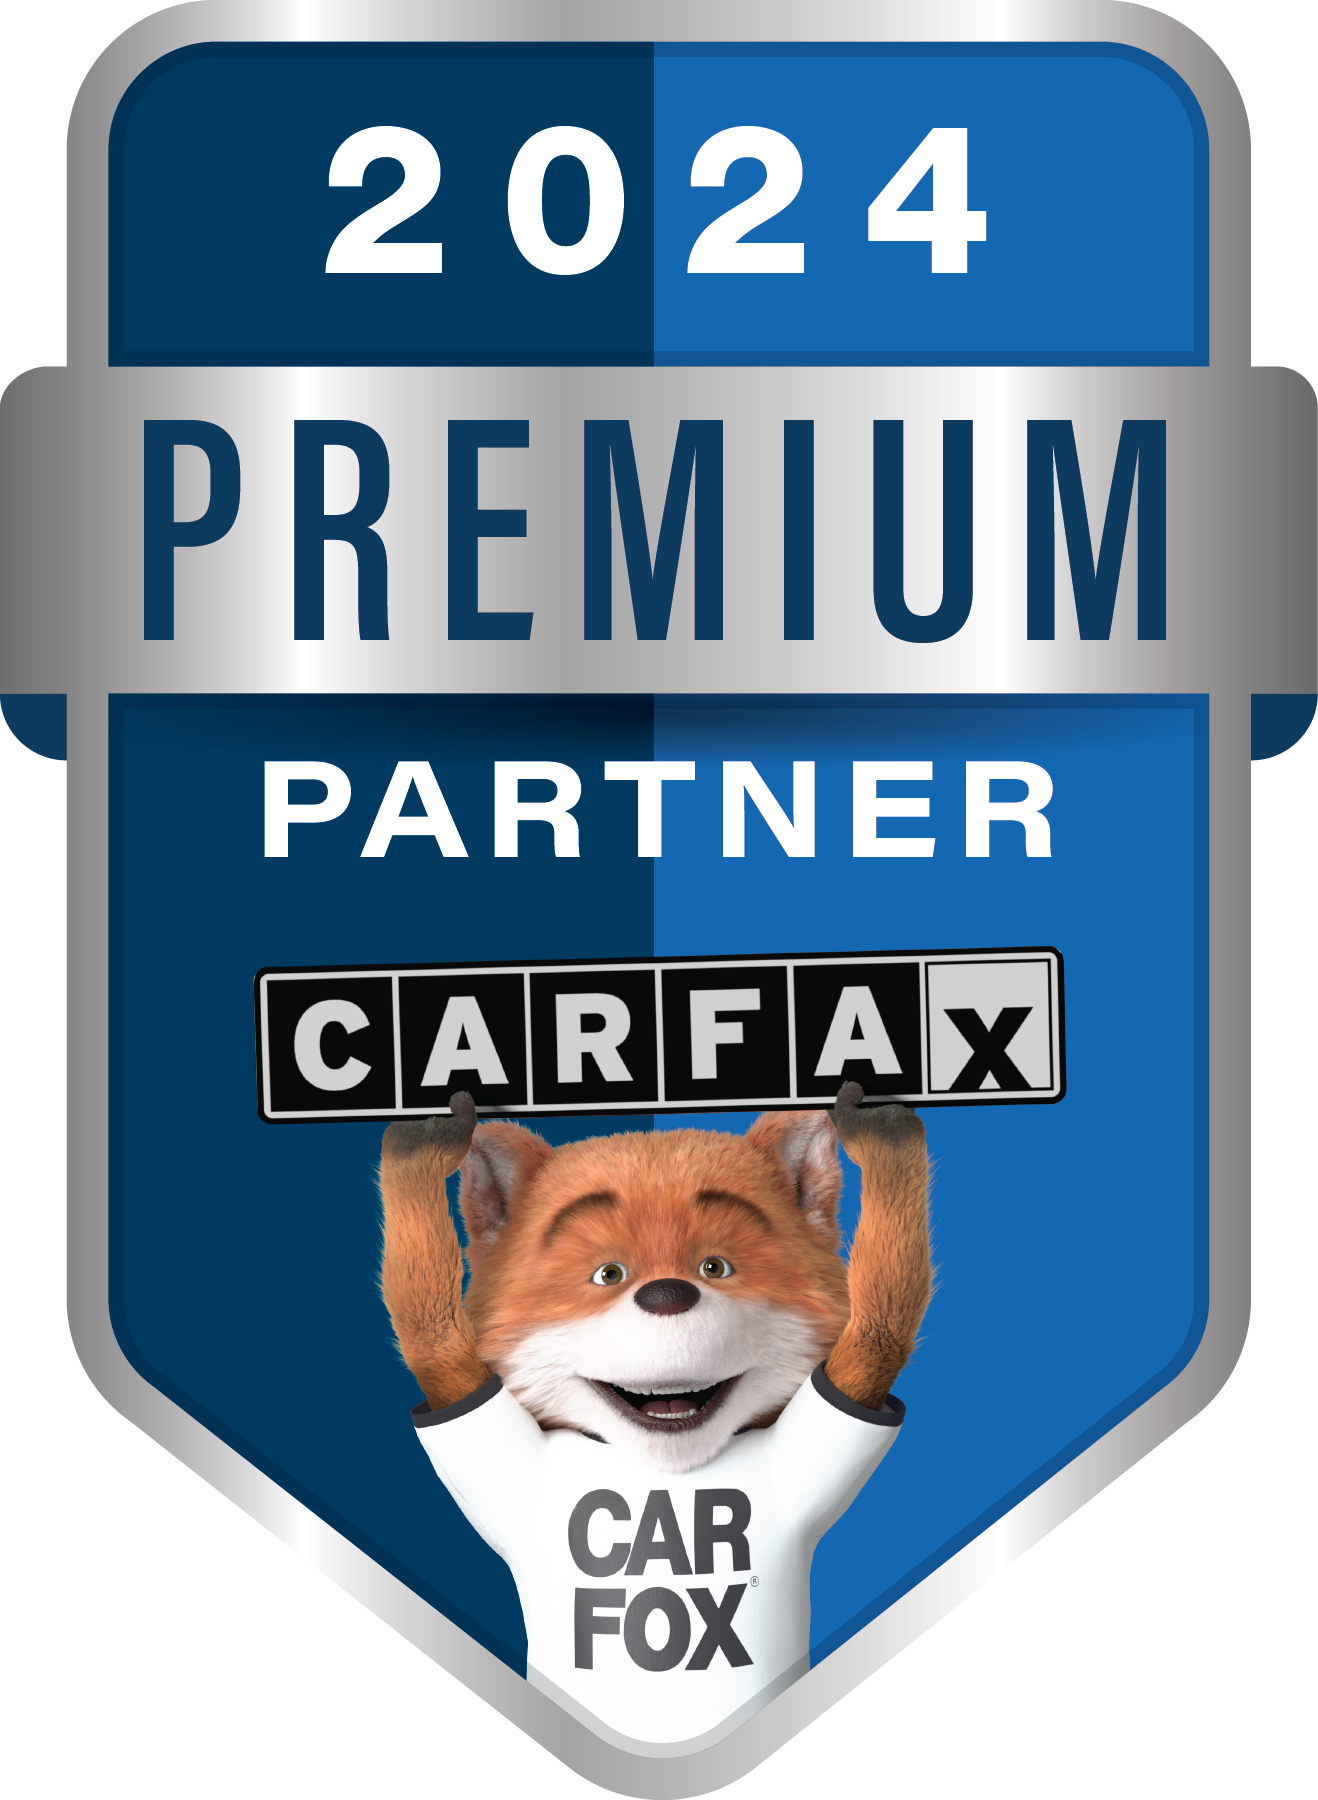 carfax premium partner logo